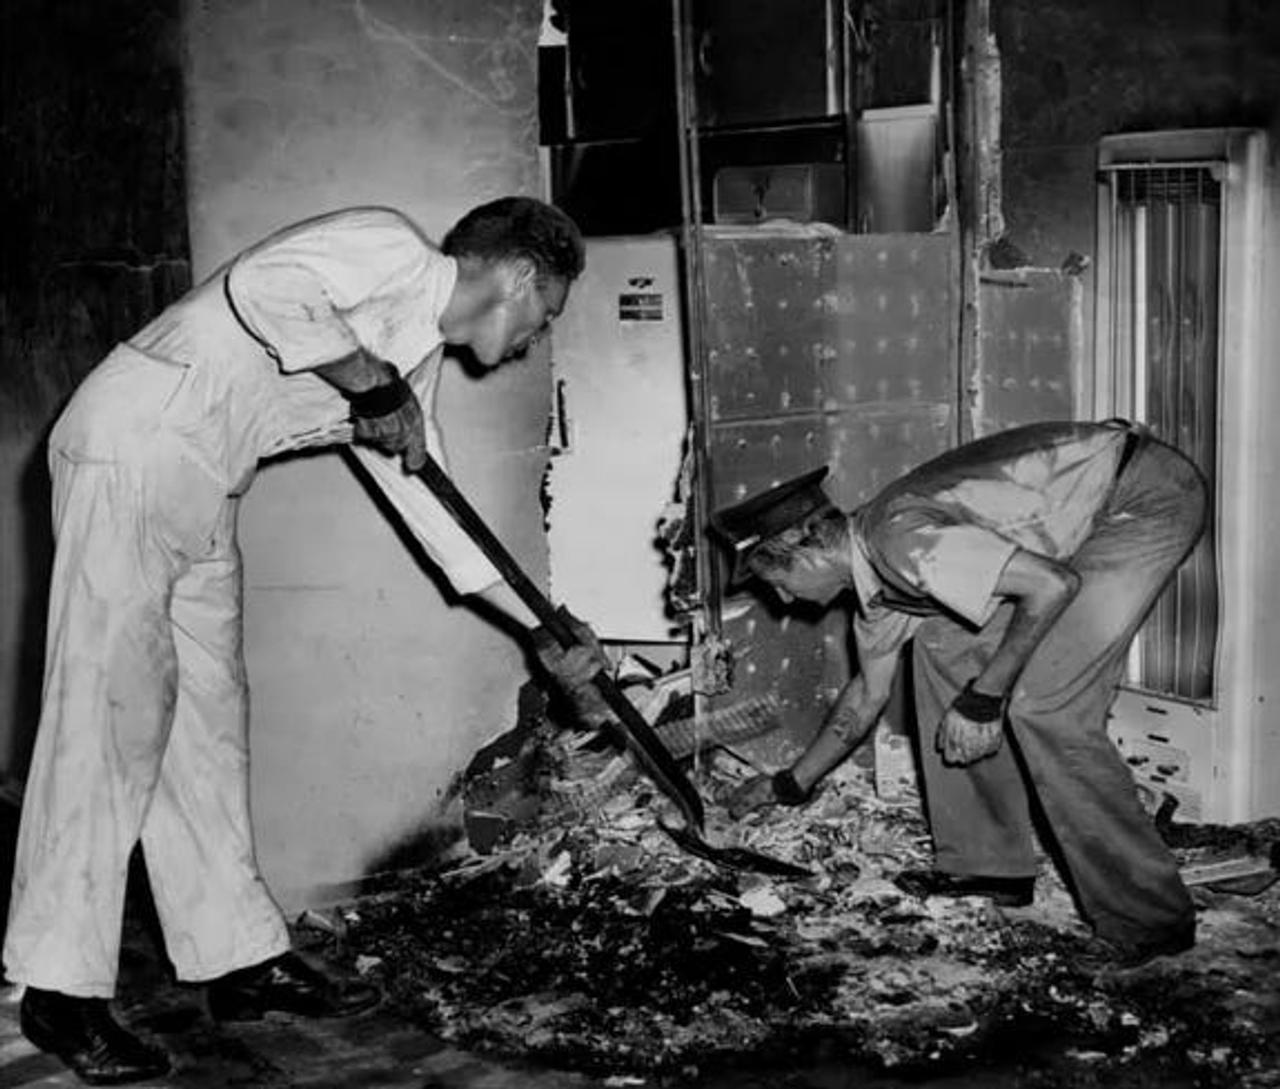  1951年、フロリダのアパートで女性の遺体が発見された現場で、瓦礫をかき集める消防士。